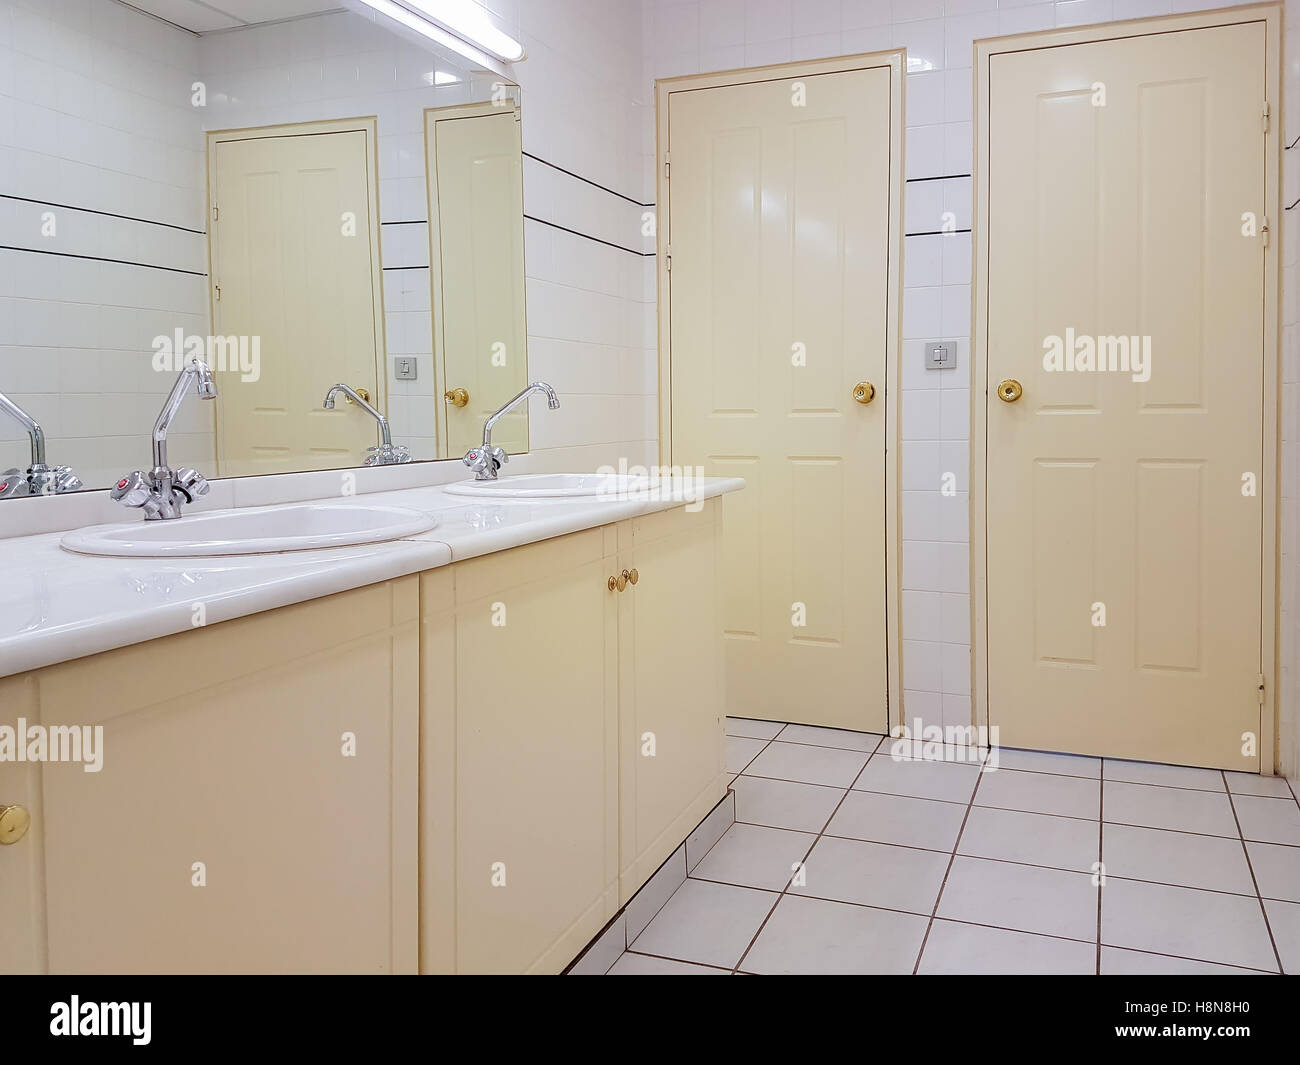 Toilettes publiques avec design de couleur beige. Banque D'Images